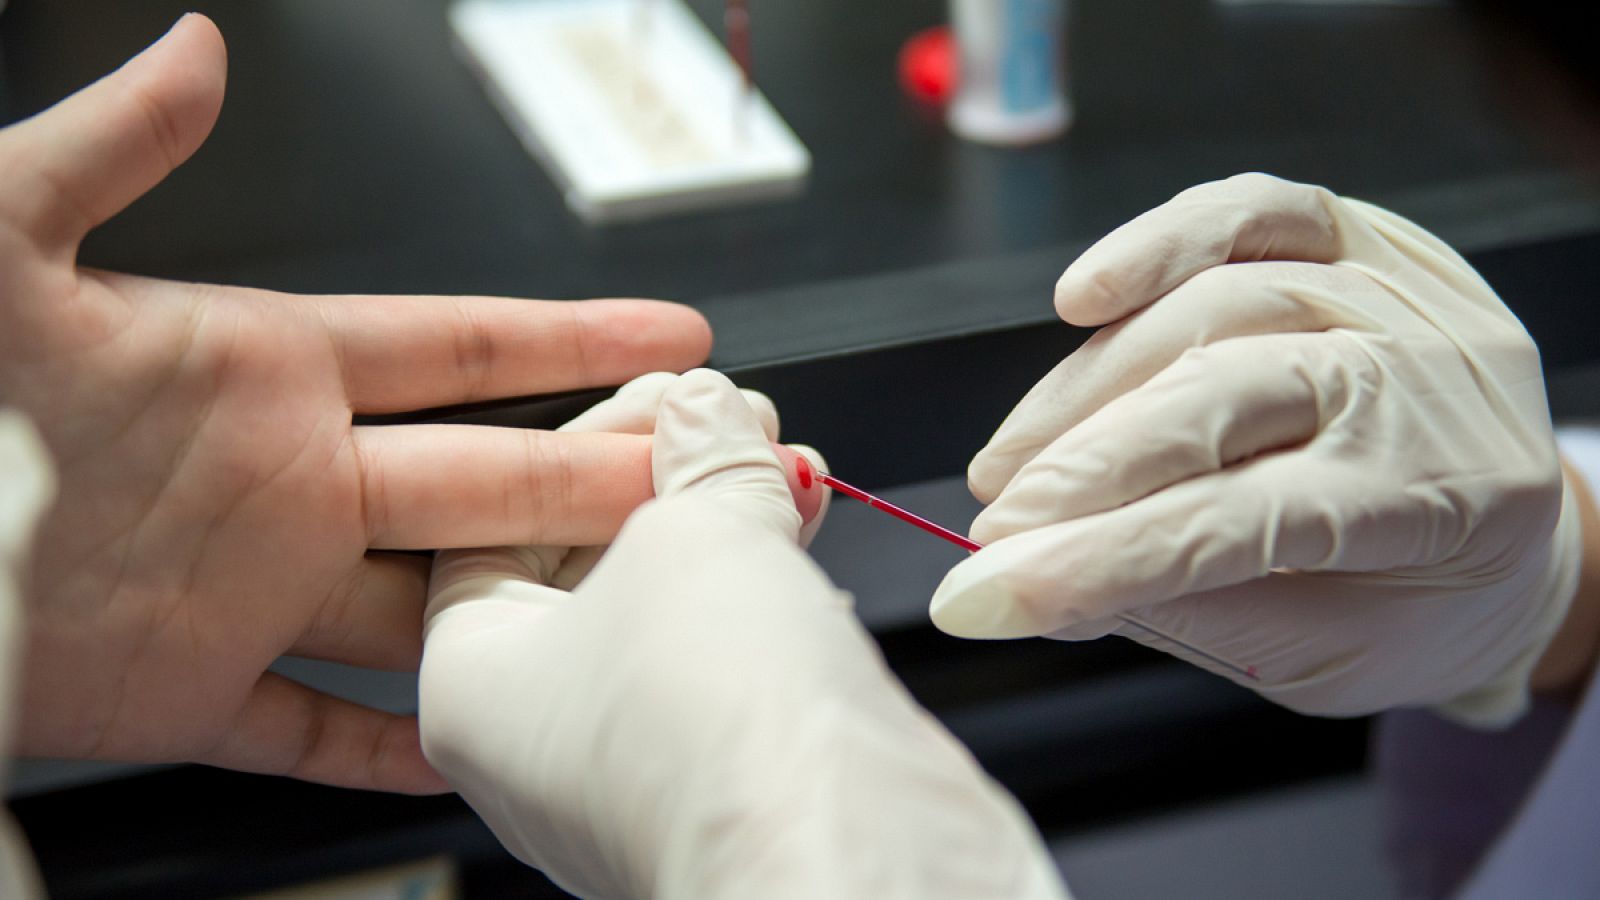 Extracción de una muestra de sangre para una prueba de VIH.